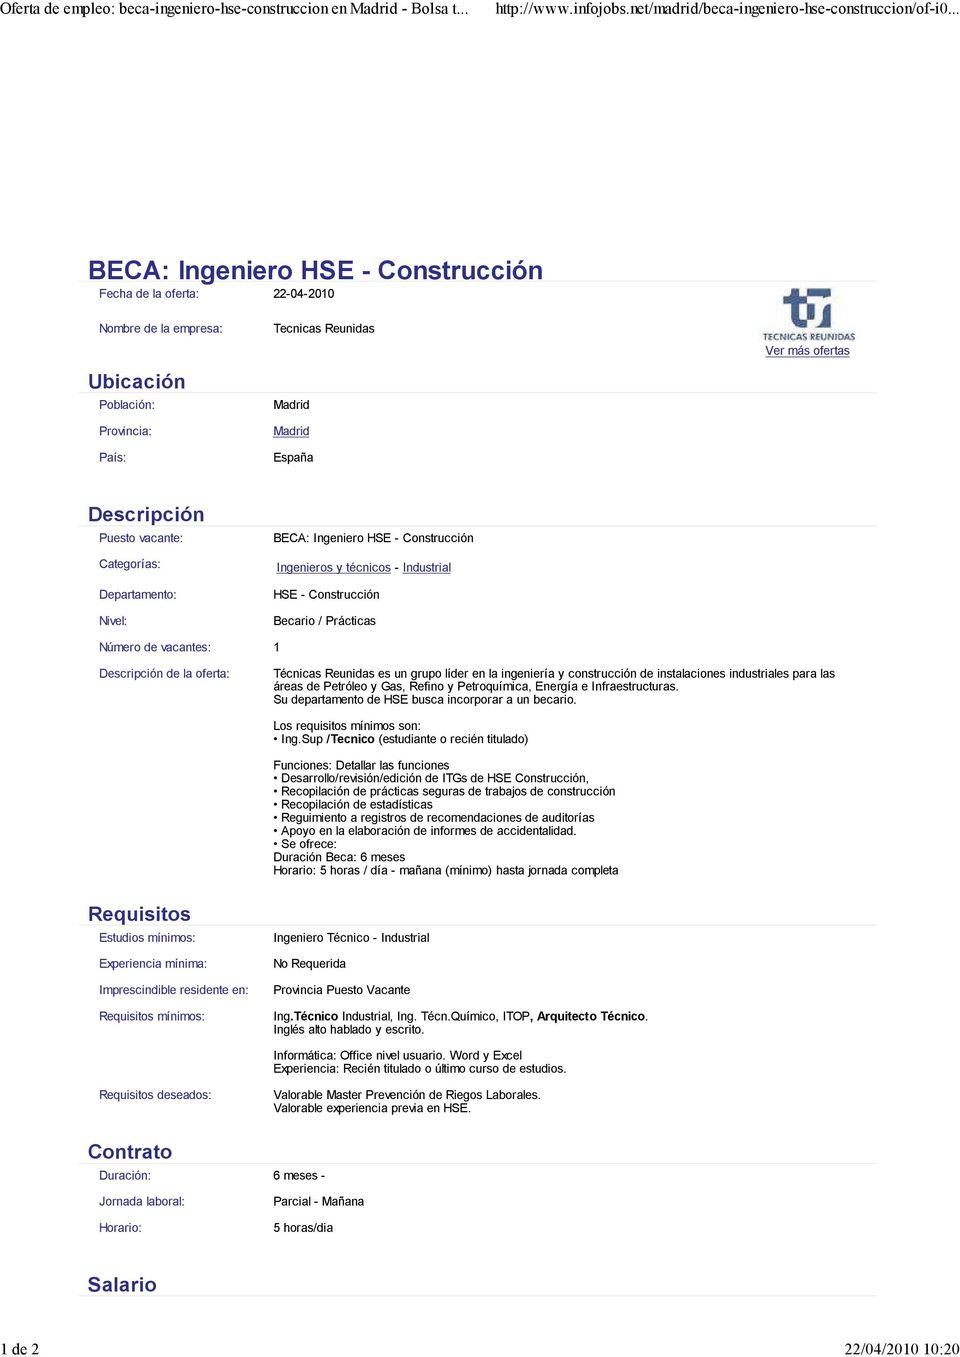 Ingenieros y técnicos - Industrial HSE - Construcción Becario / Prácticas de la oferta: Técnicas Reunidas es un grupo líder en la ingeniería y construcción de instalaciones industriales para las